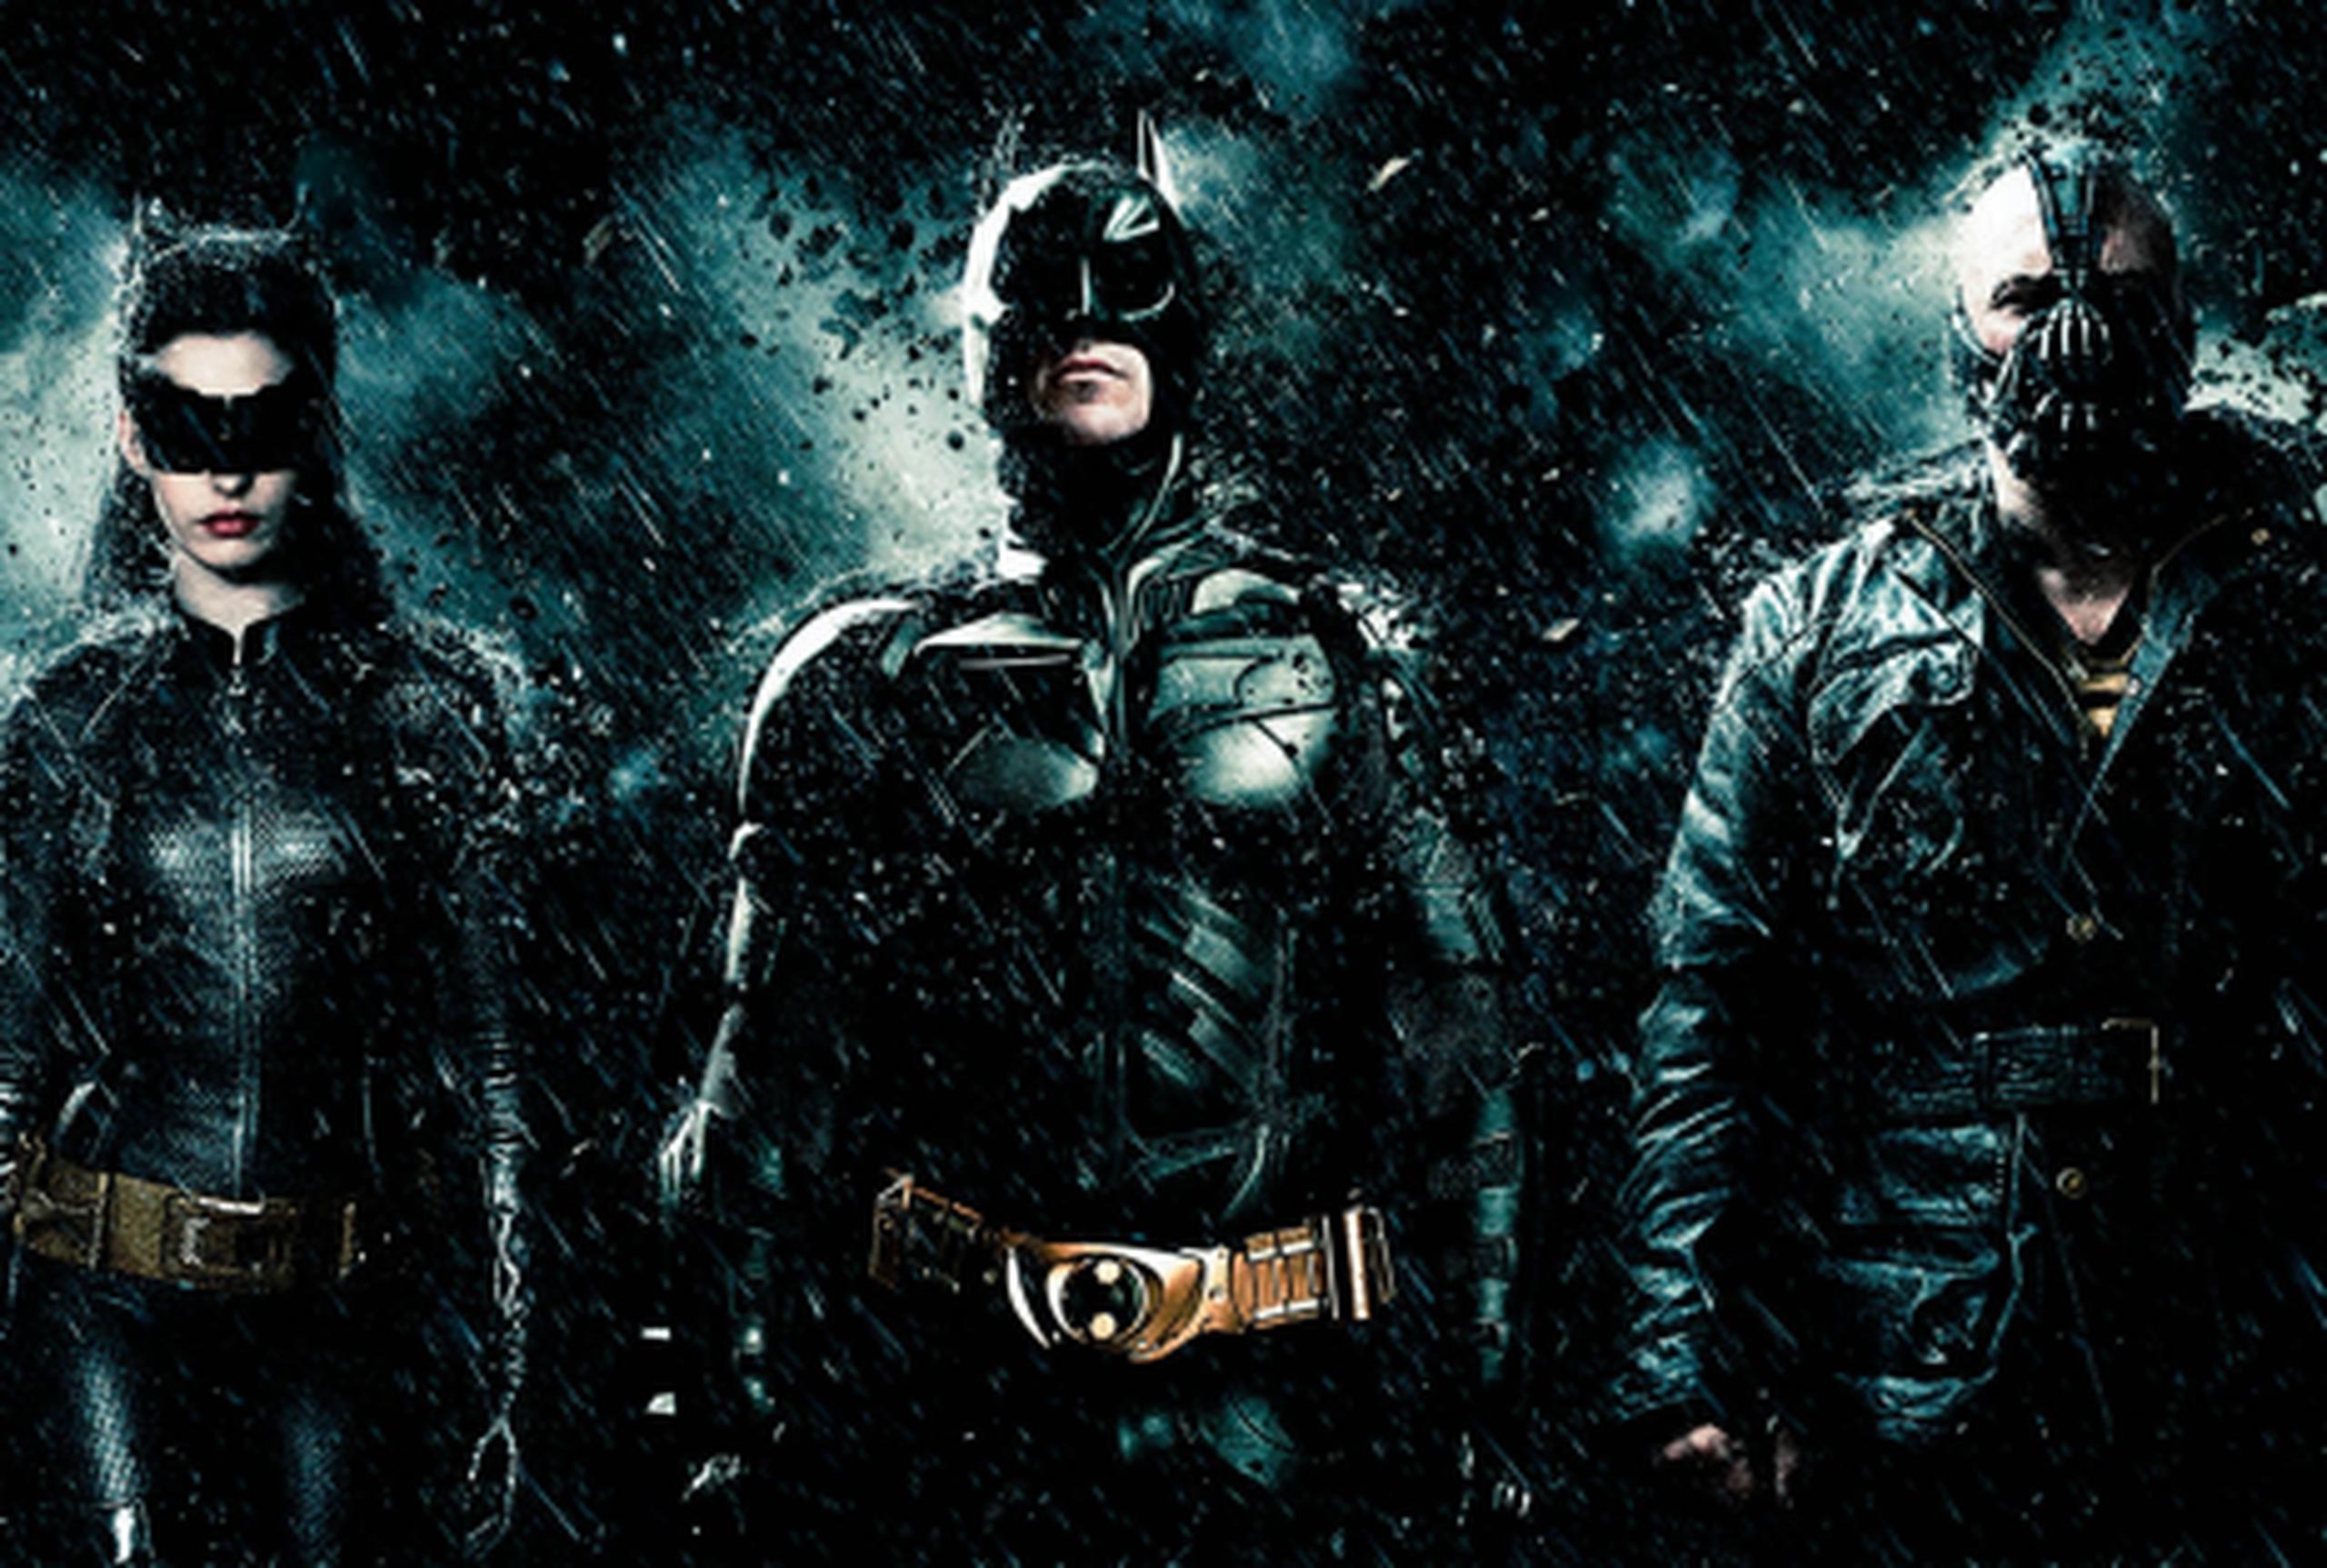 Desalojan cine en México donde se estrenaba Batman - Primera Hora